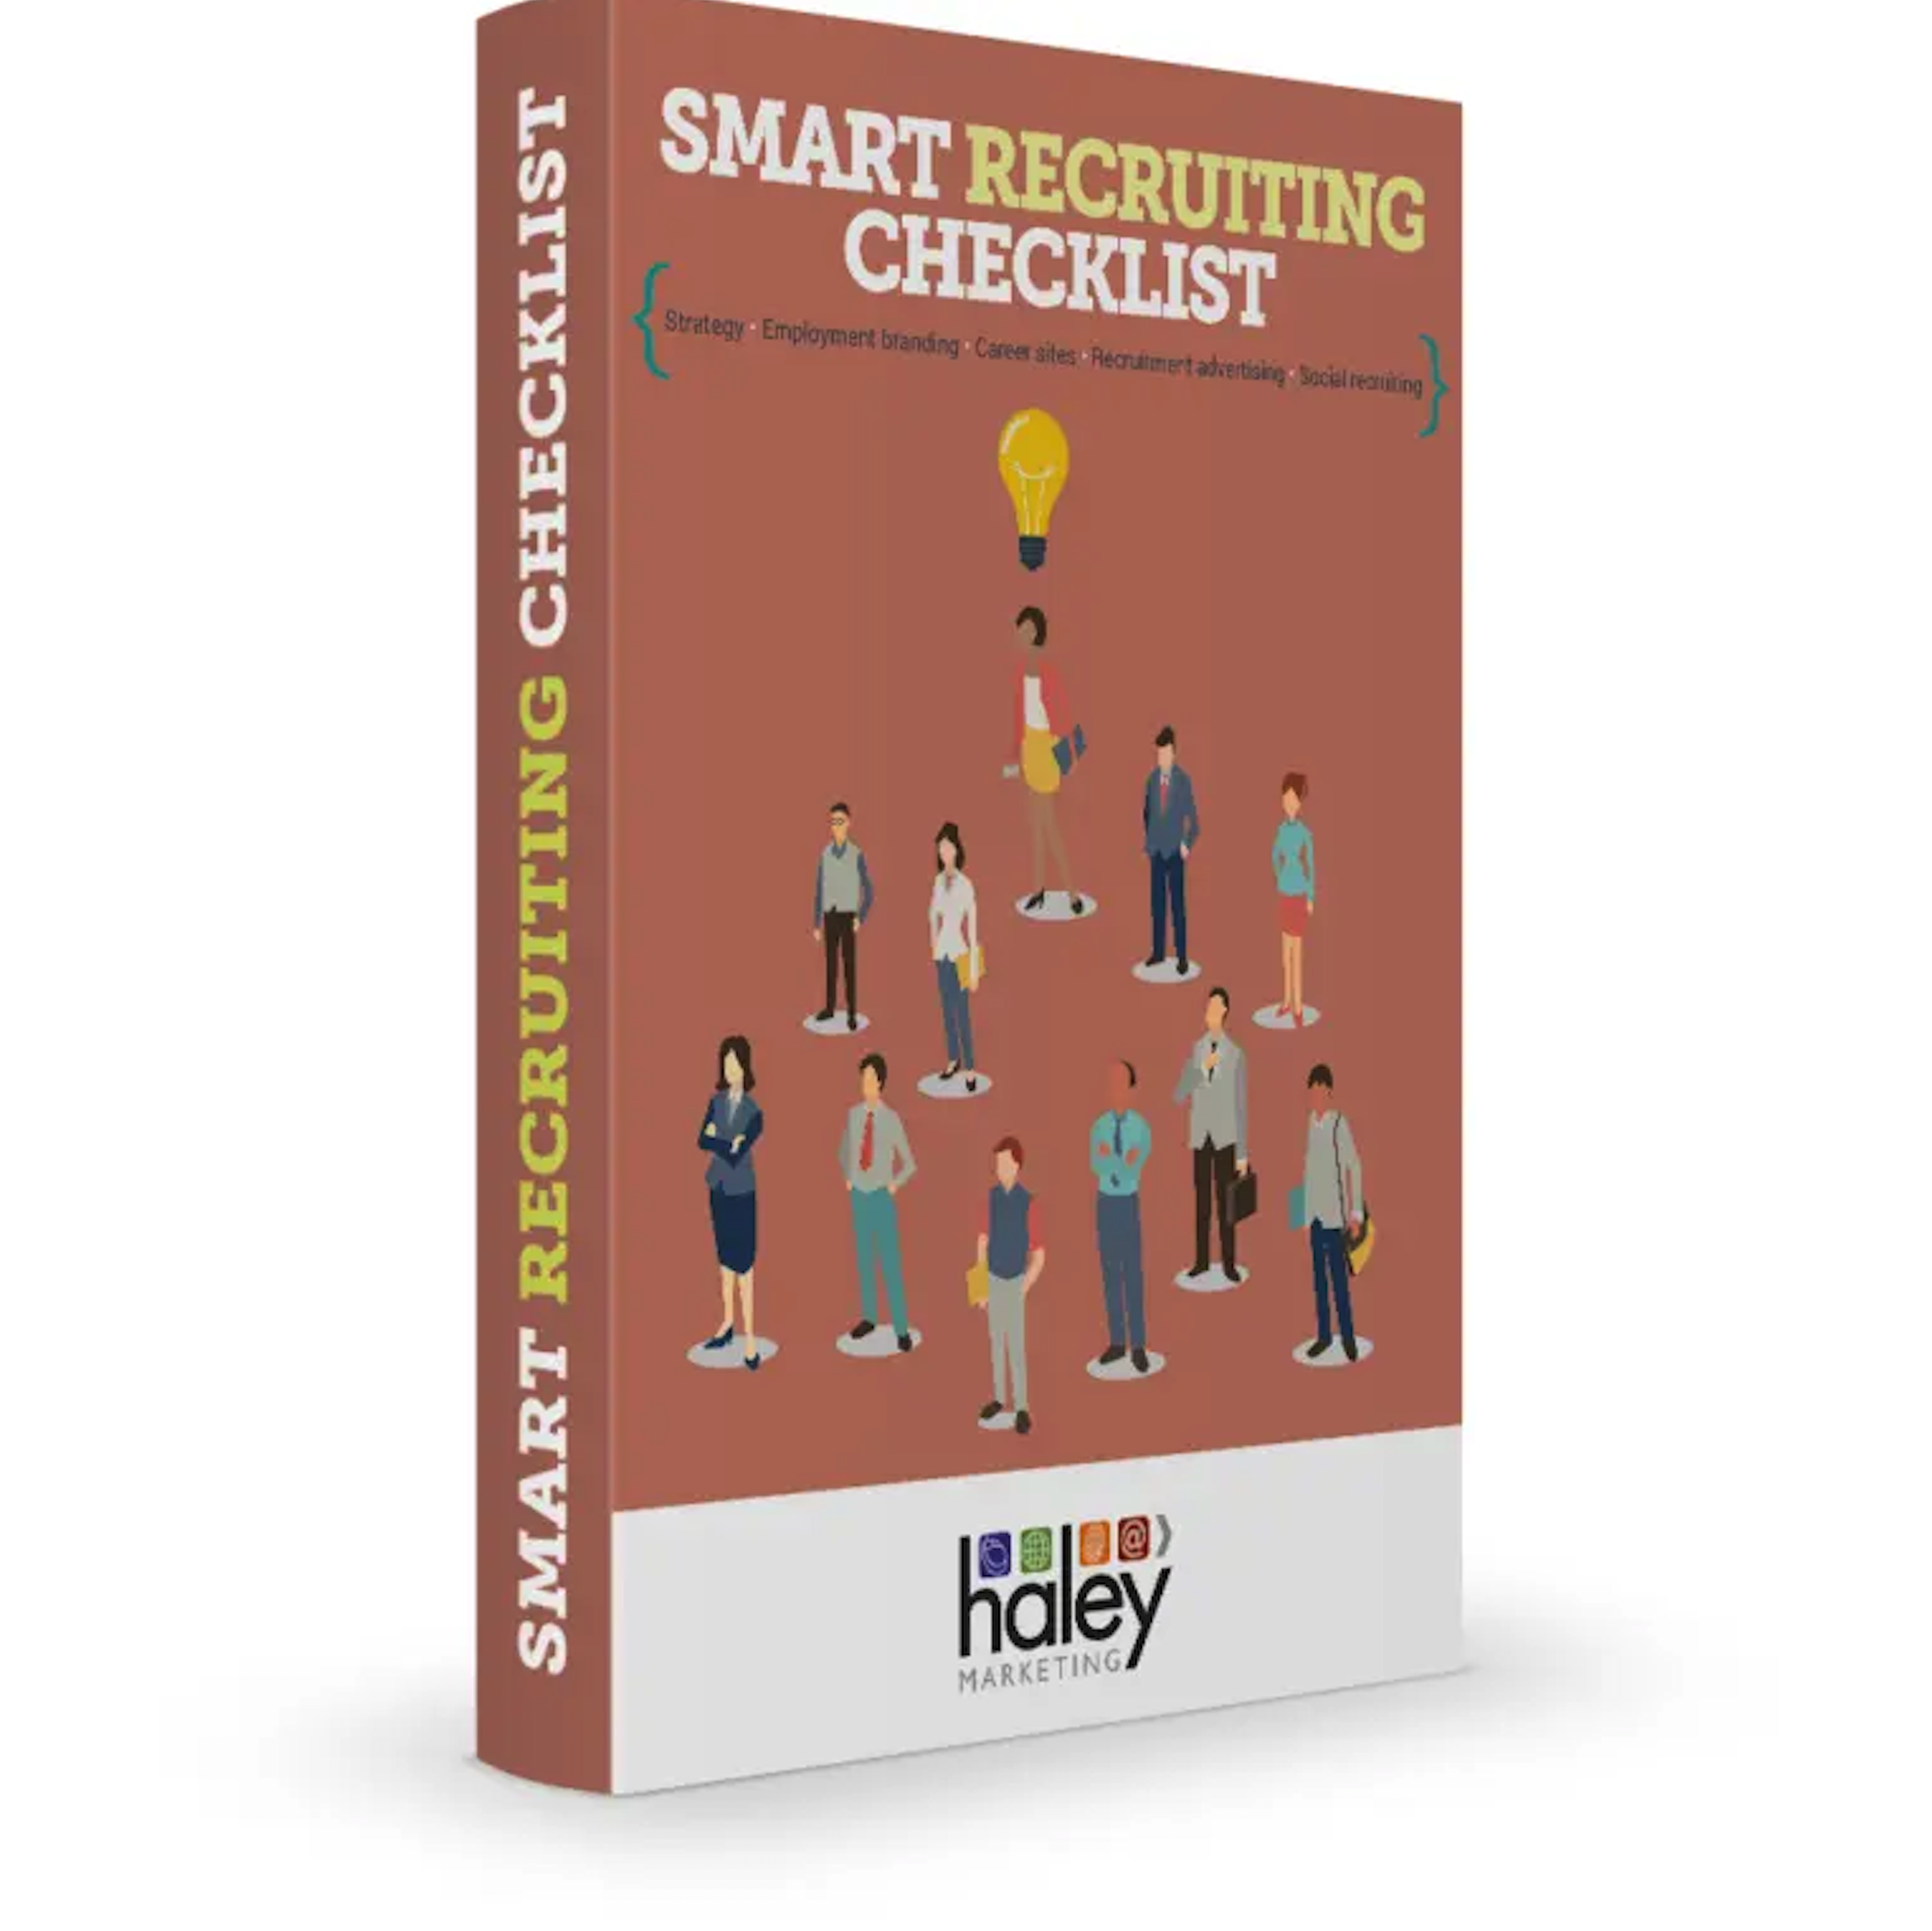 The Smart Recruiting Checklist